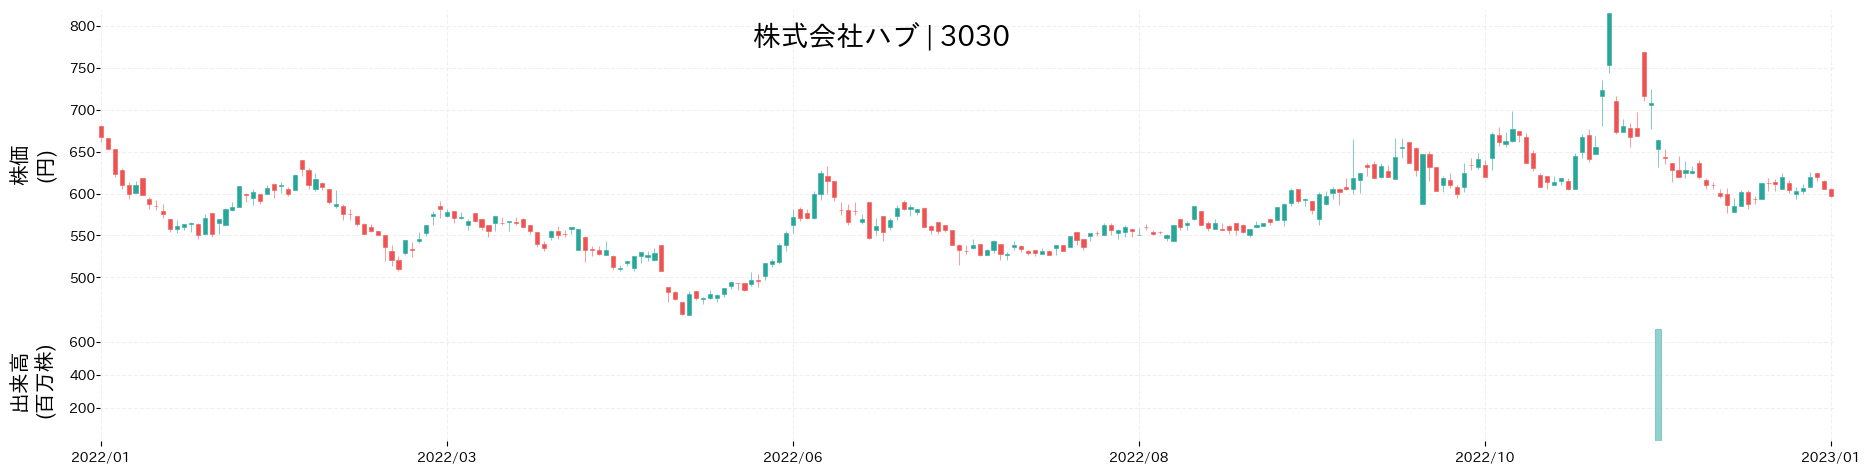 ハブの株価推移(2022)